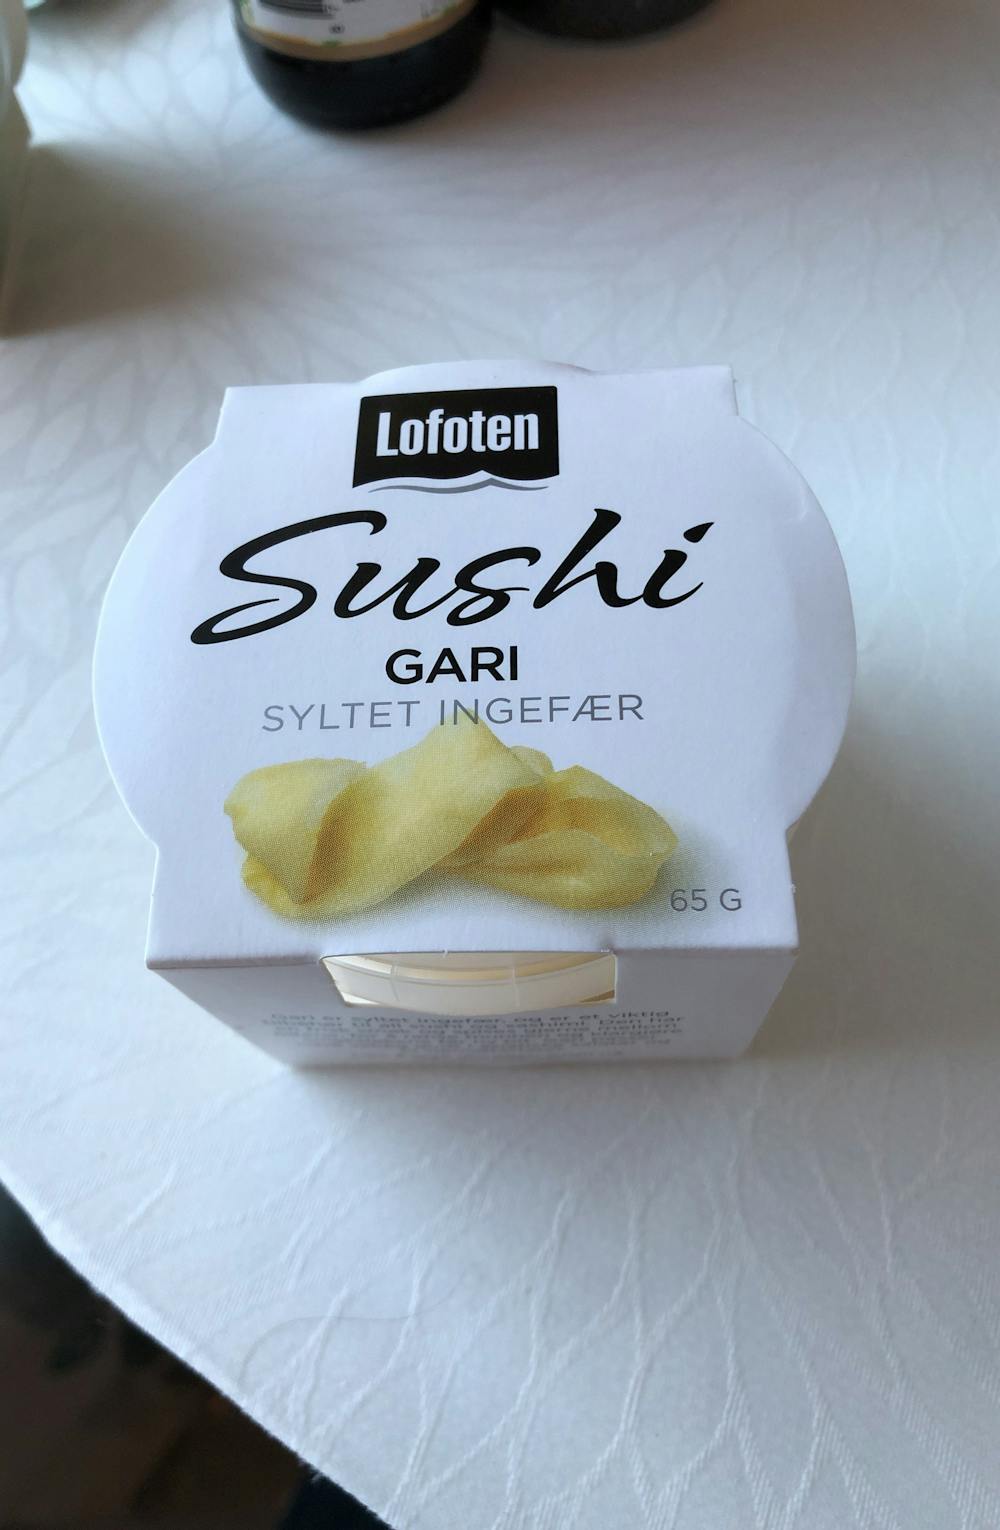 Sushi gari, syltet ingefær, Lofoten